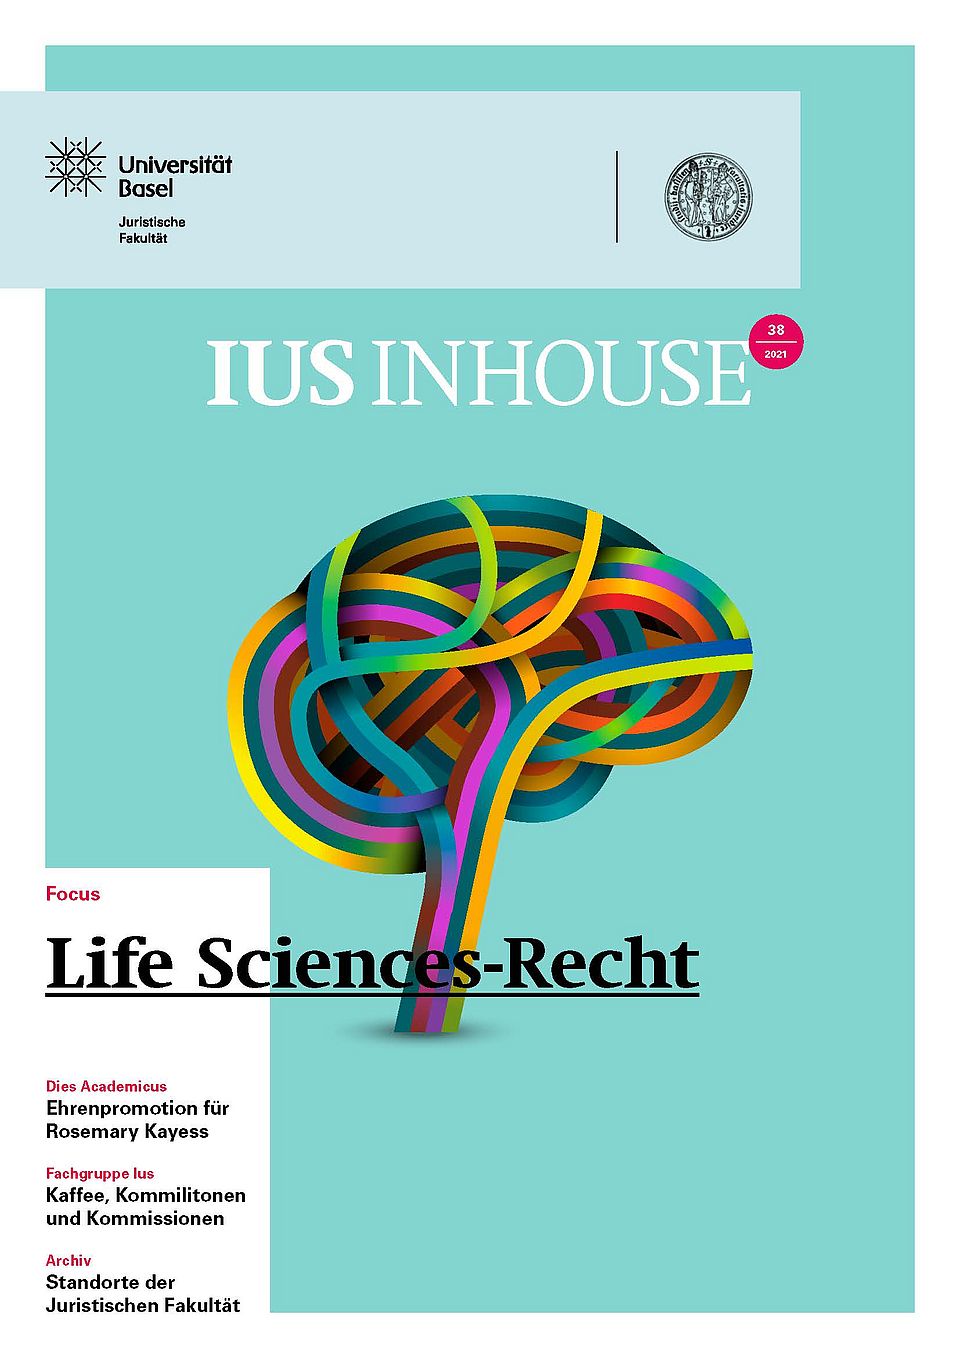 Titelseite des Magazins ius inhouse (Nummer 38), das die Vernetzungen im Gehirn zeigt und damit symbolisch für das Life Science-Recht steht. 